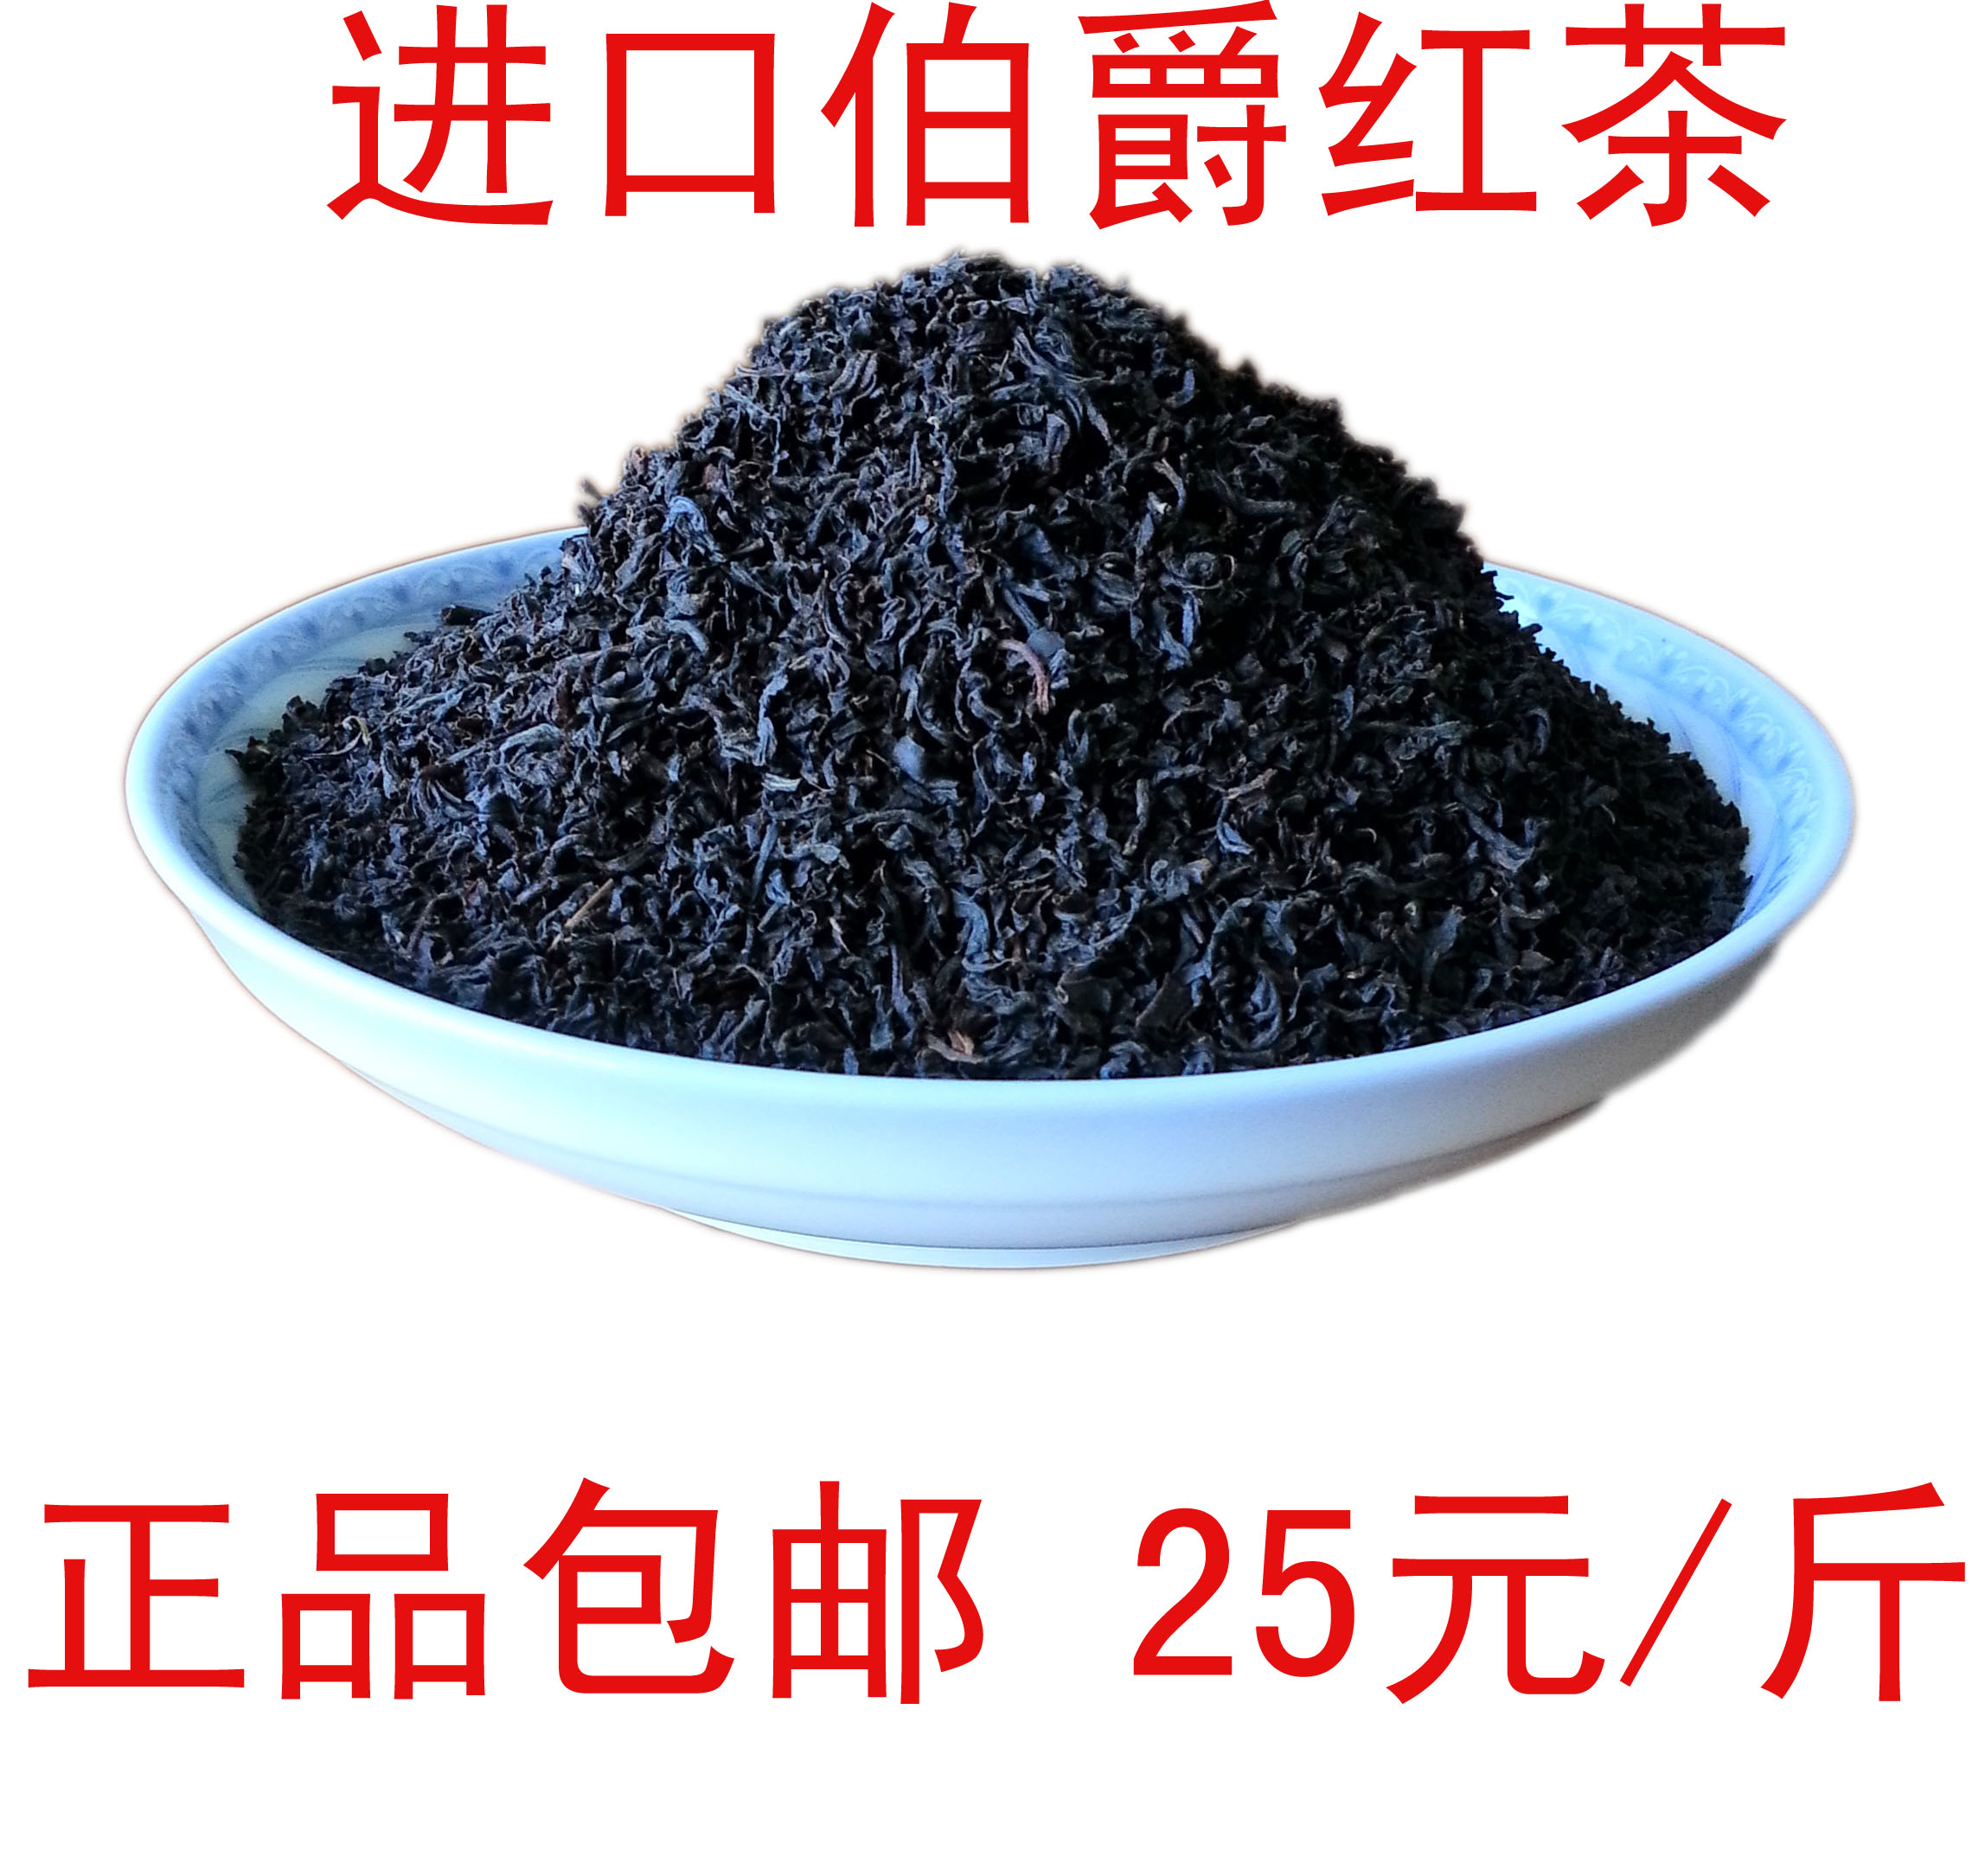 供应用于奶茶原料的高级进口伯爵红茶伯爵奶茶原料图片